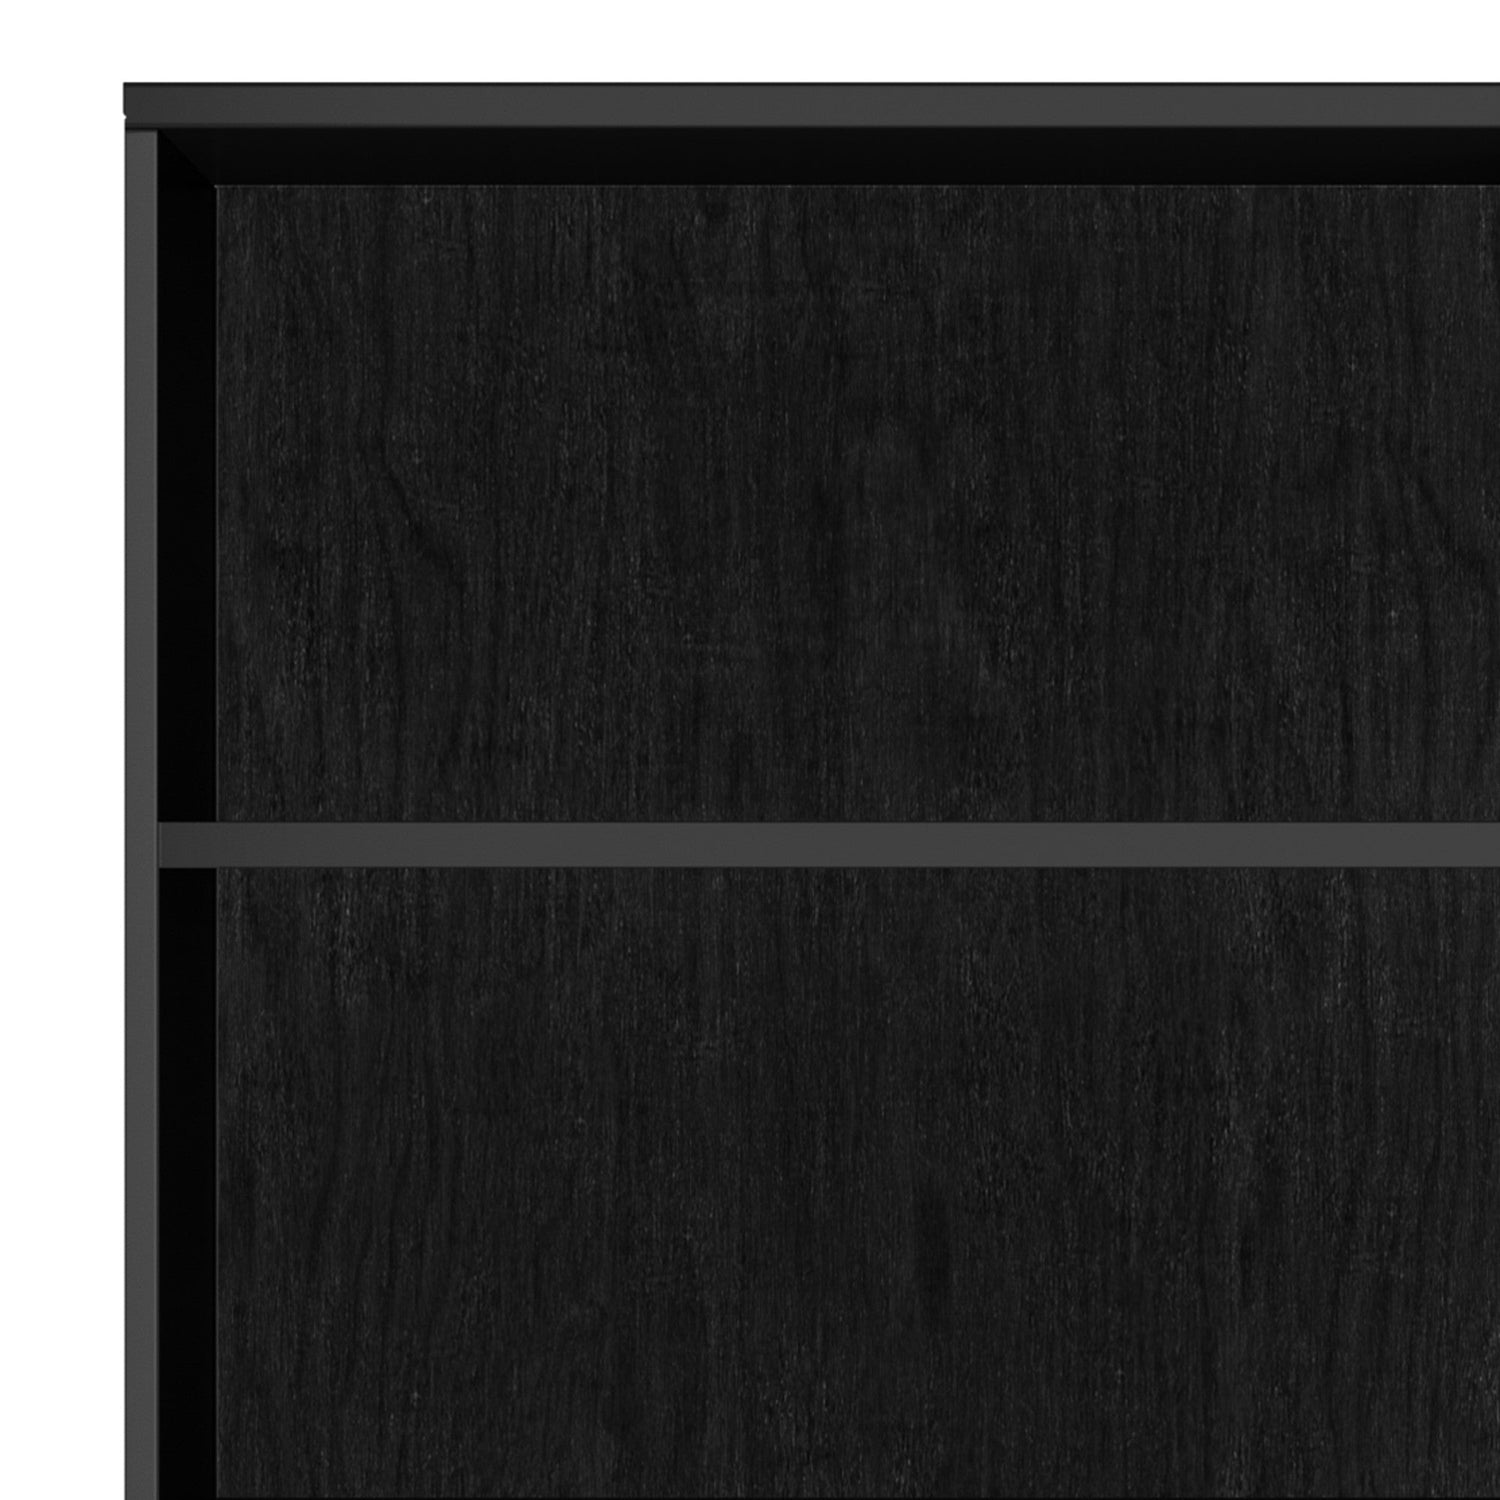 Black | Harper 60 x 24 inch Bookcase with Storage